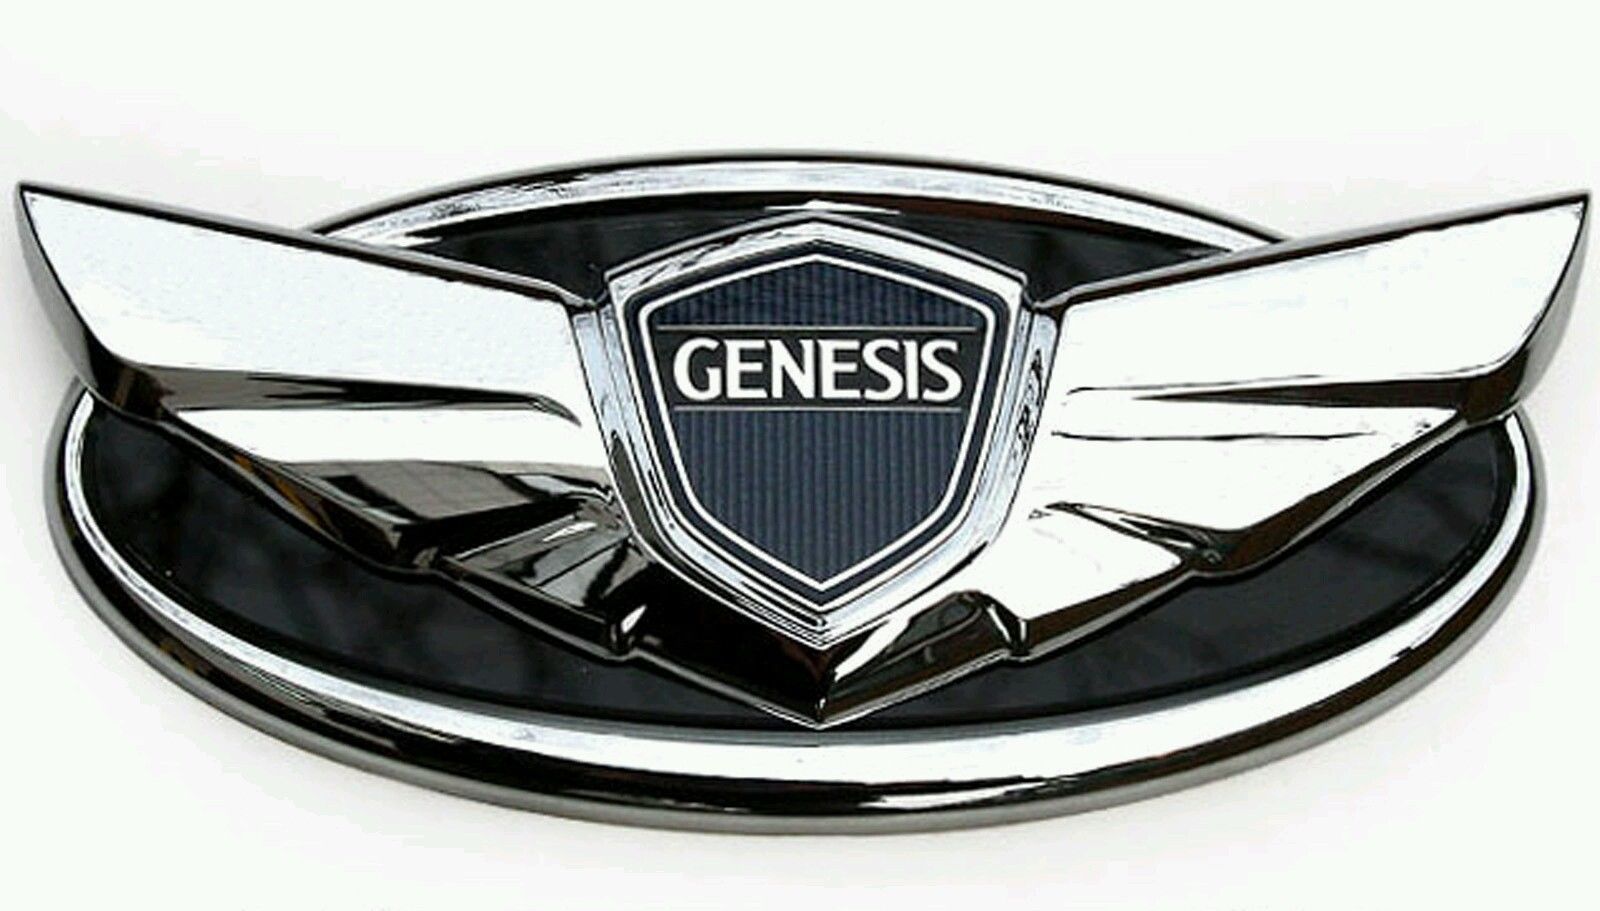 Hyundai Genesis emblem Wallpaper